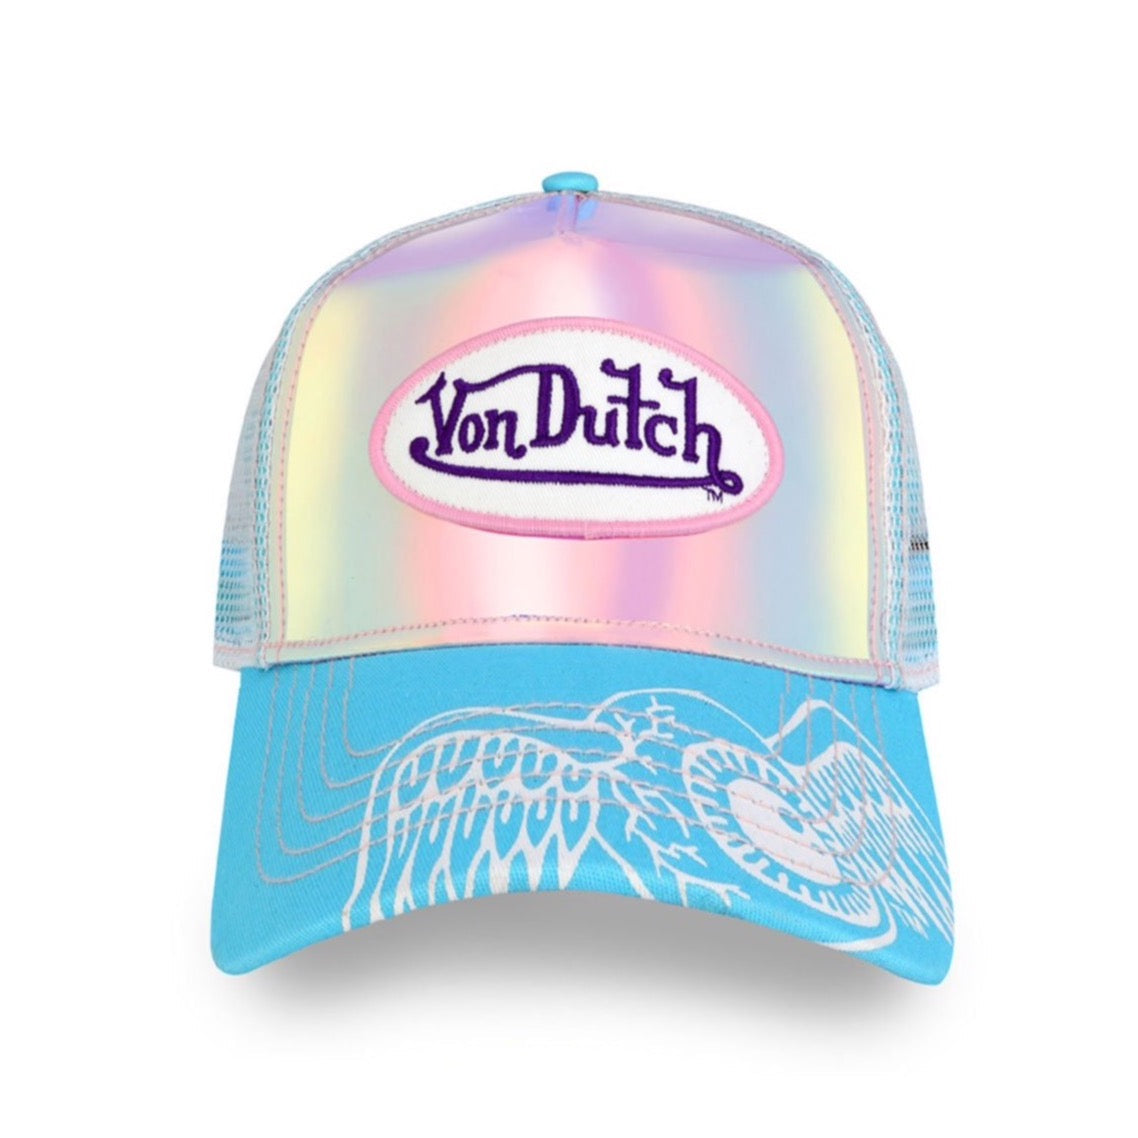 Von Dutch Hologram White/Blue eyeball Trucker hat